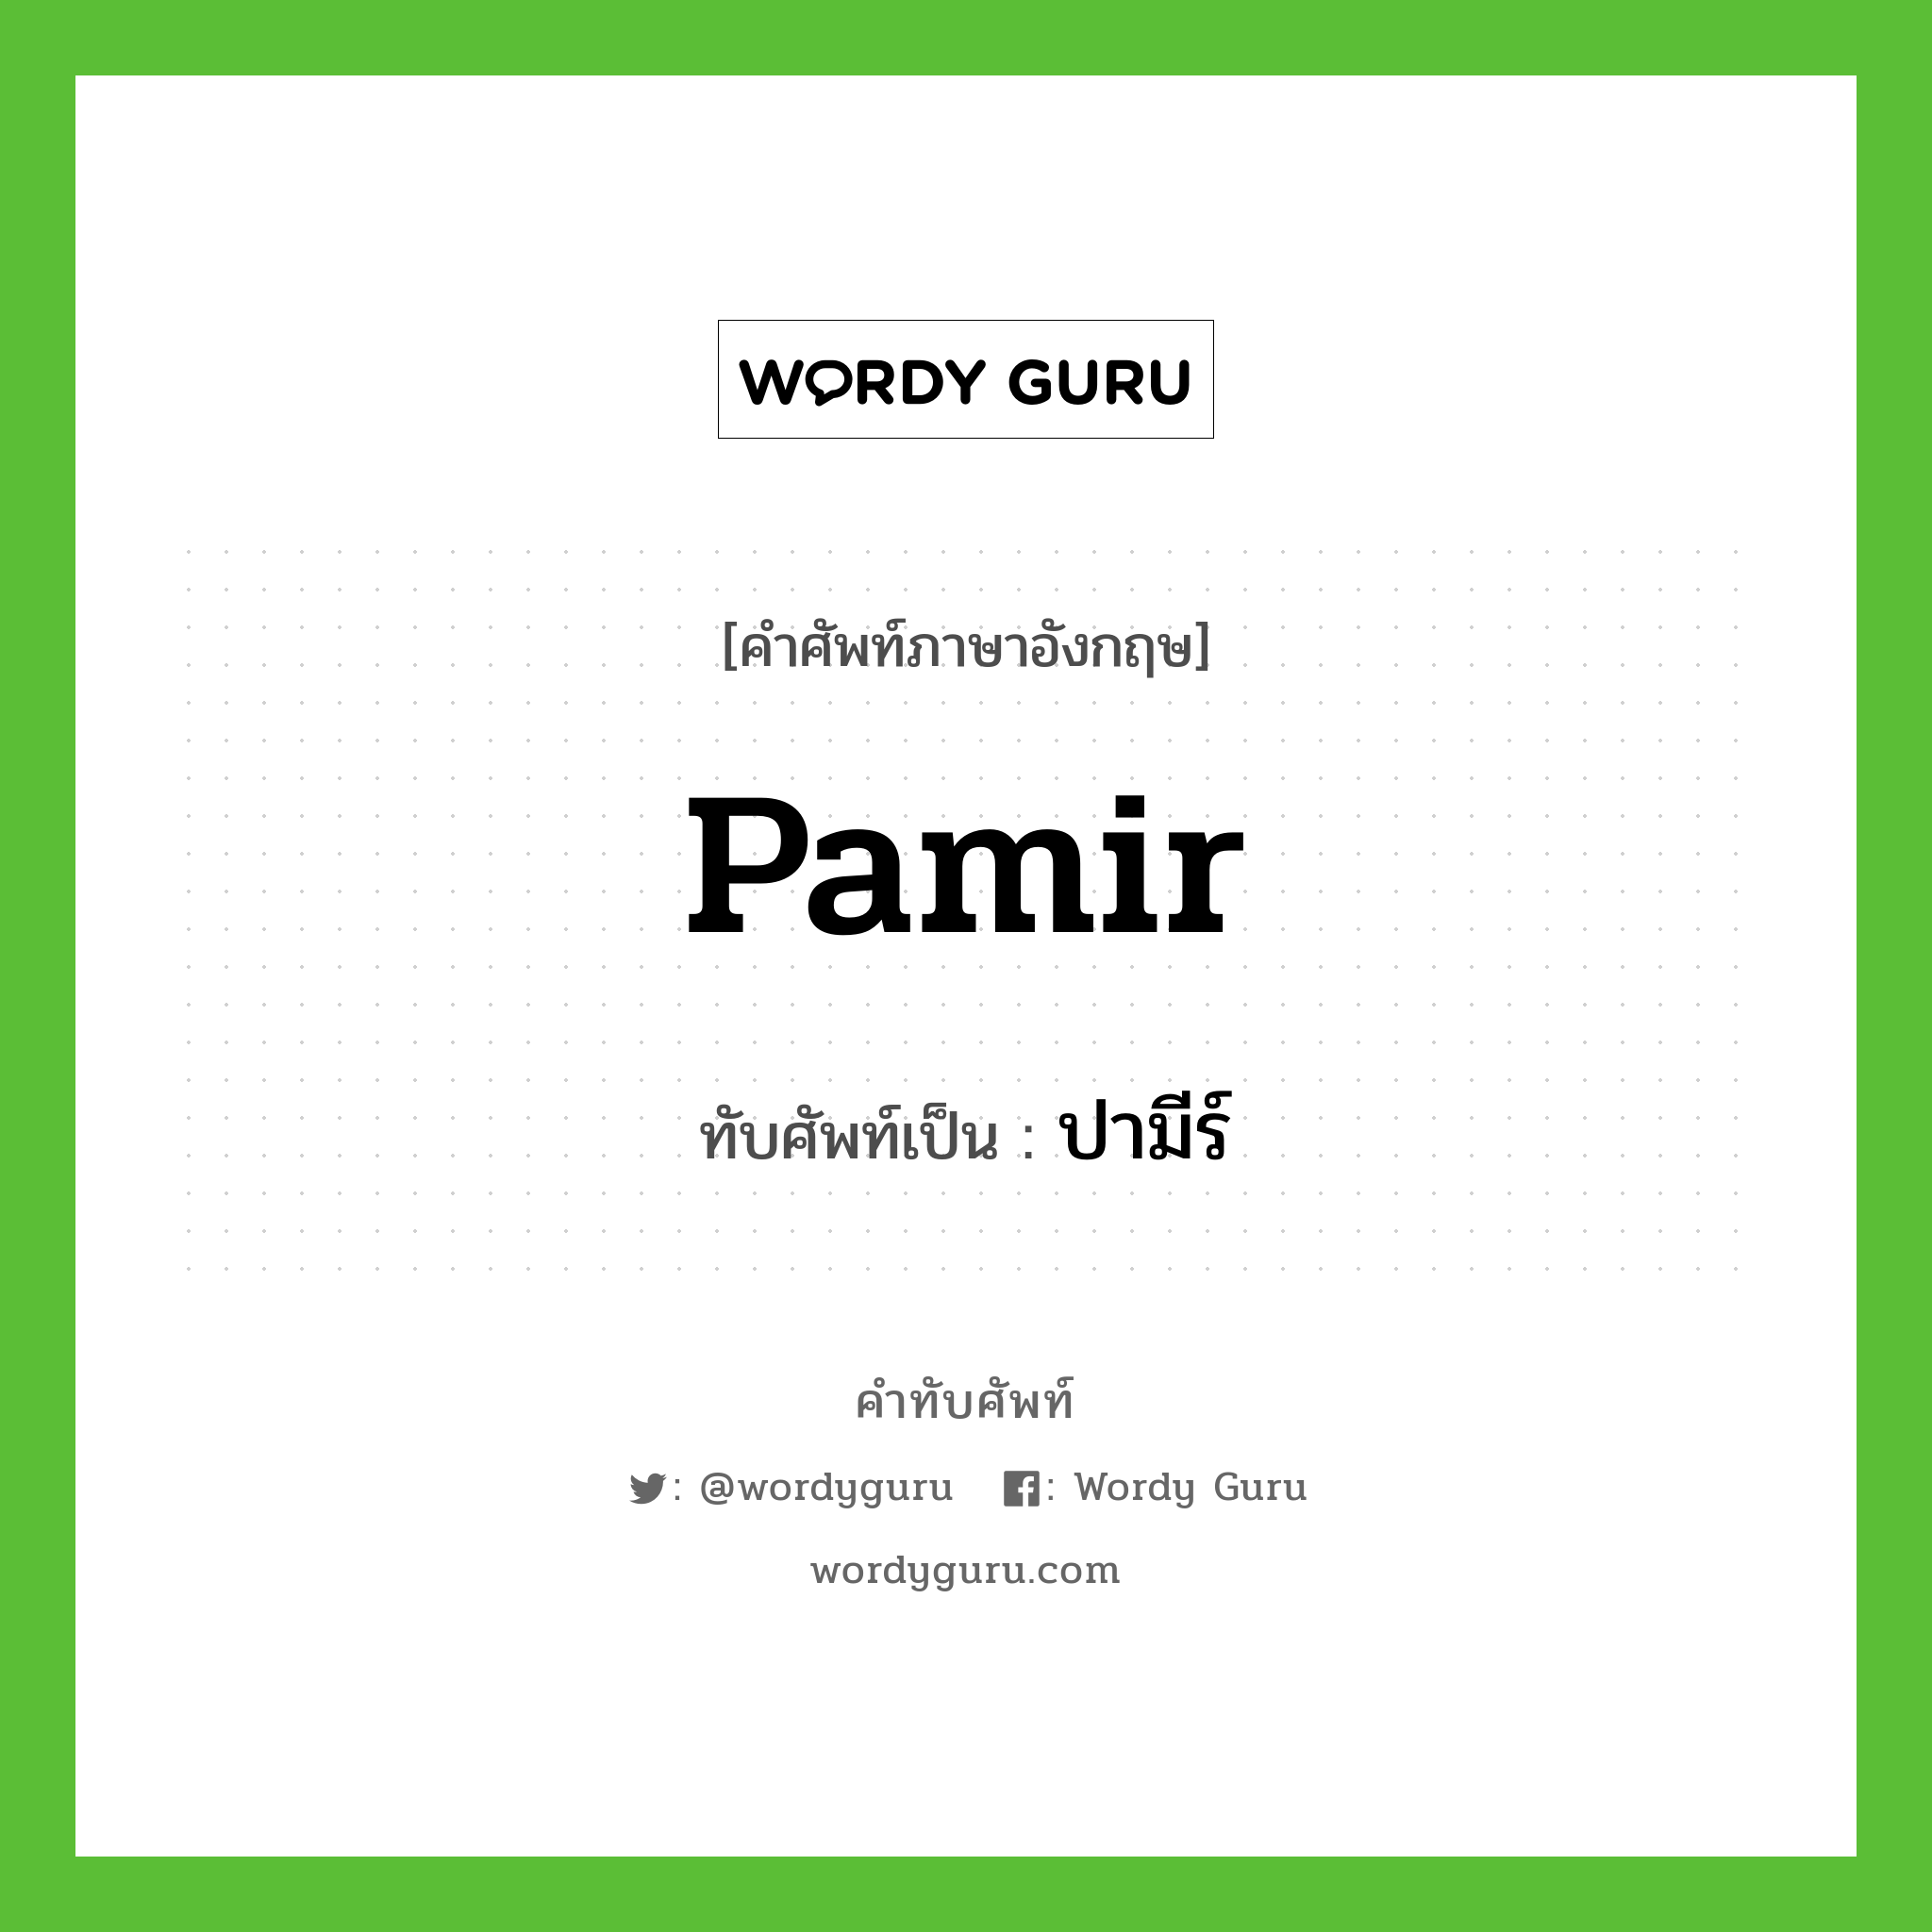 Pamir เขียนเป็นคำไทยว่าอะไร?, คำศัพท์ภาษาอังกฤษ Pamir ทับศัพท์เป็น ปามีร์